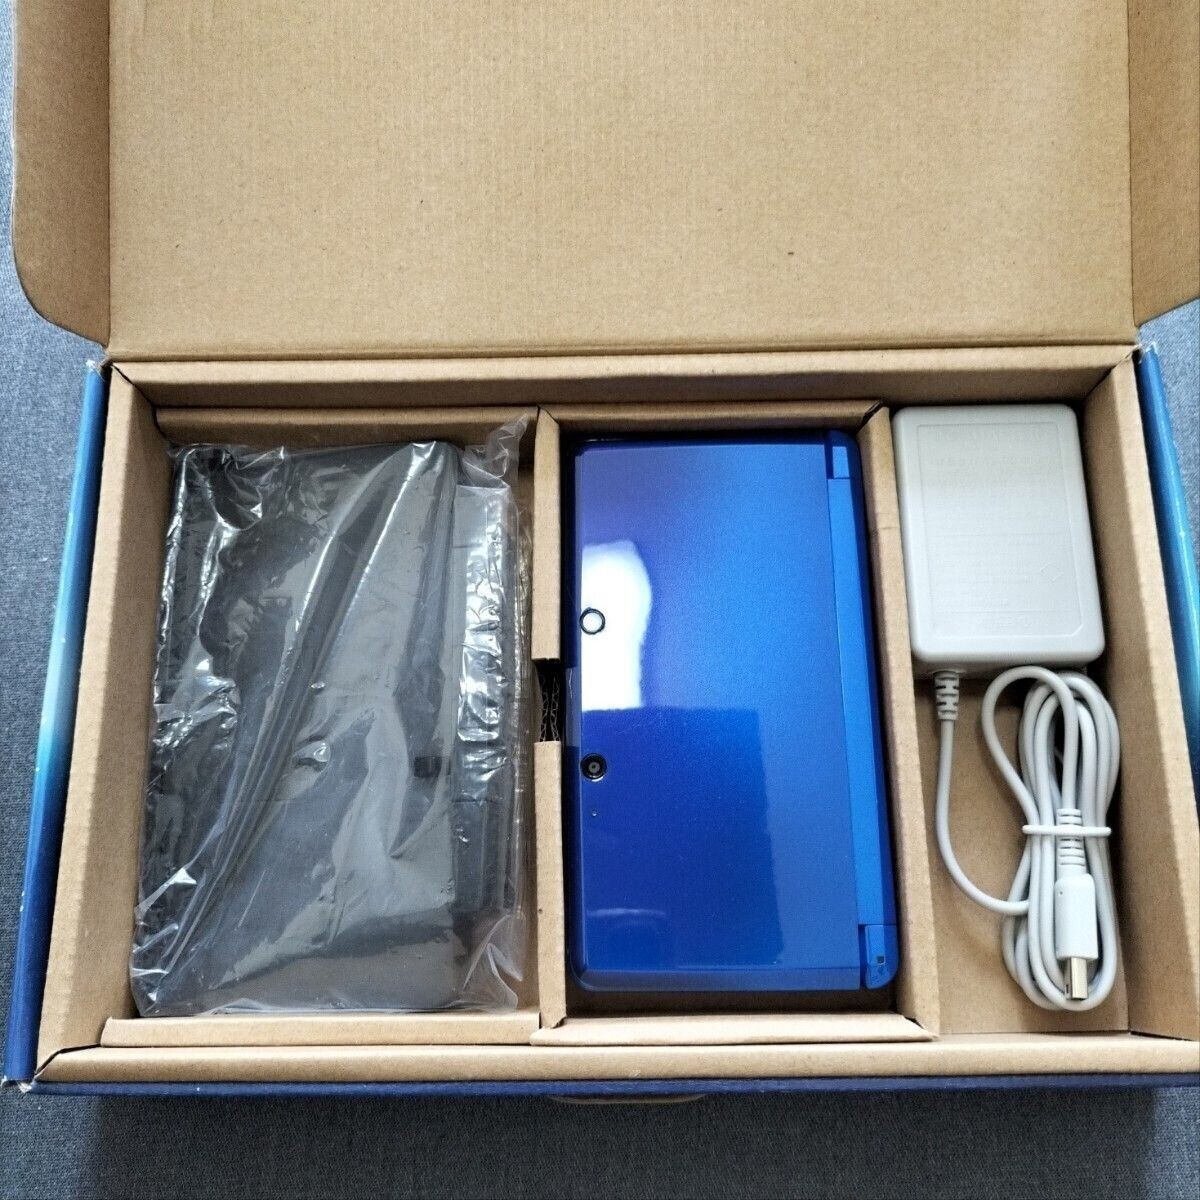 Nintendo 3DS Cobalt Blue Console